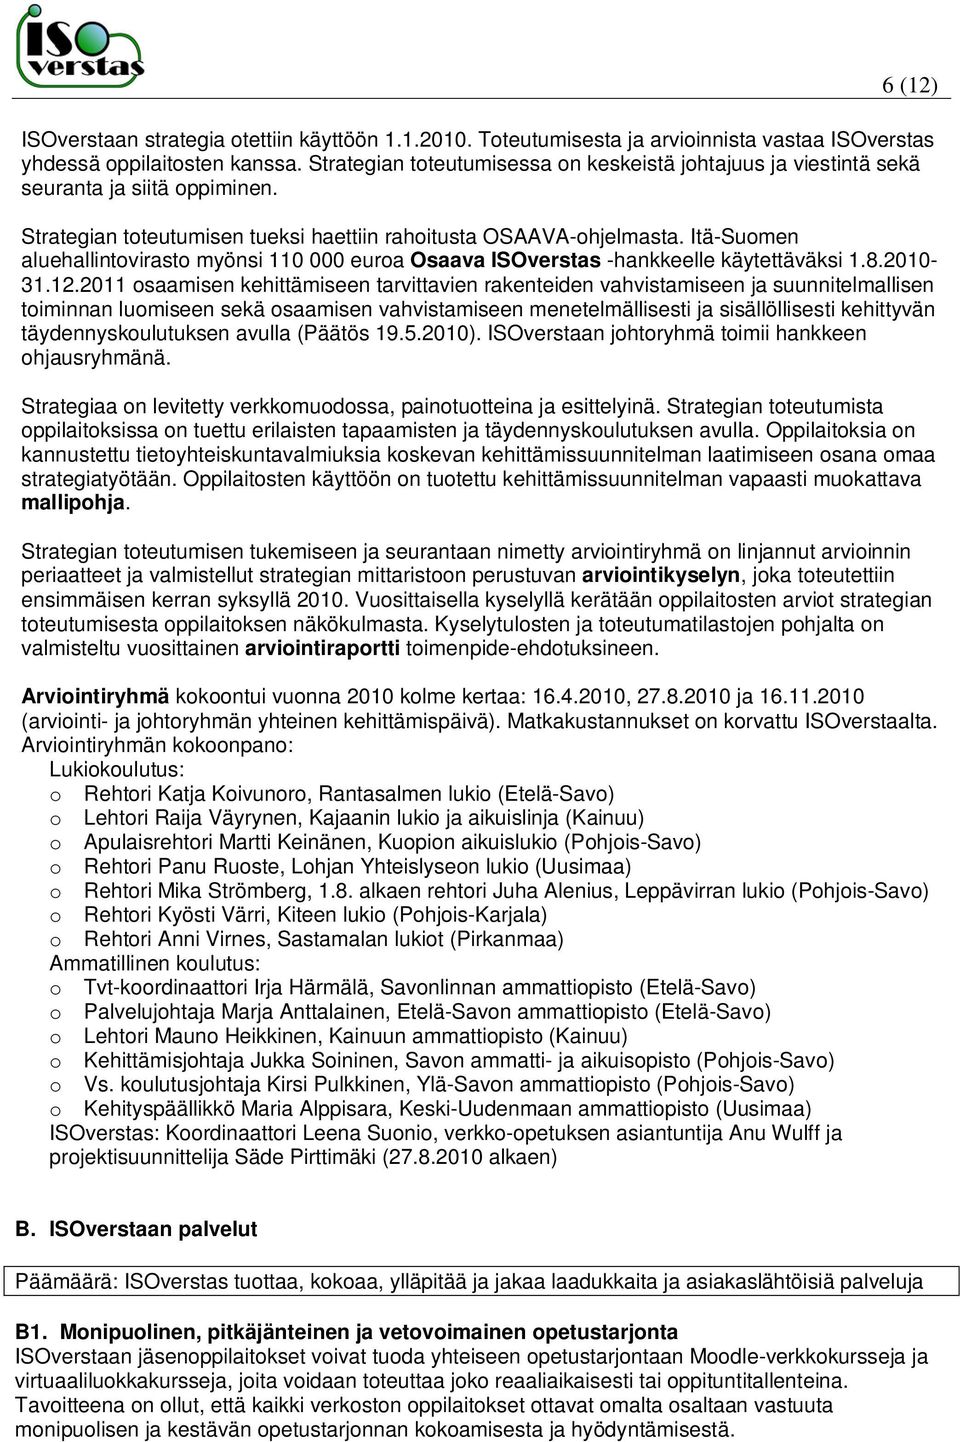 Itä-Suomen aluehallintovirasto myönsi 110 000 euroa Osaava ISOverstas -hankkeelle käytettäväksi 1.8.2010-31.12.